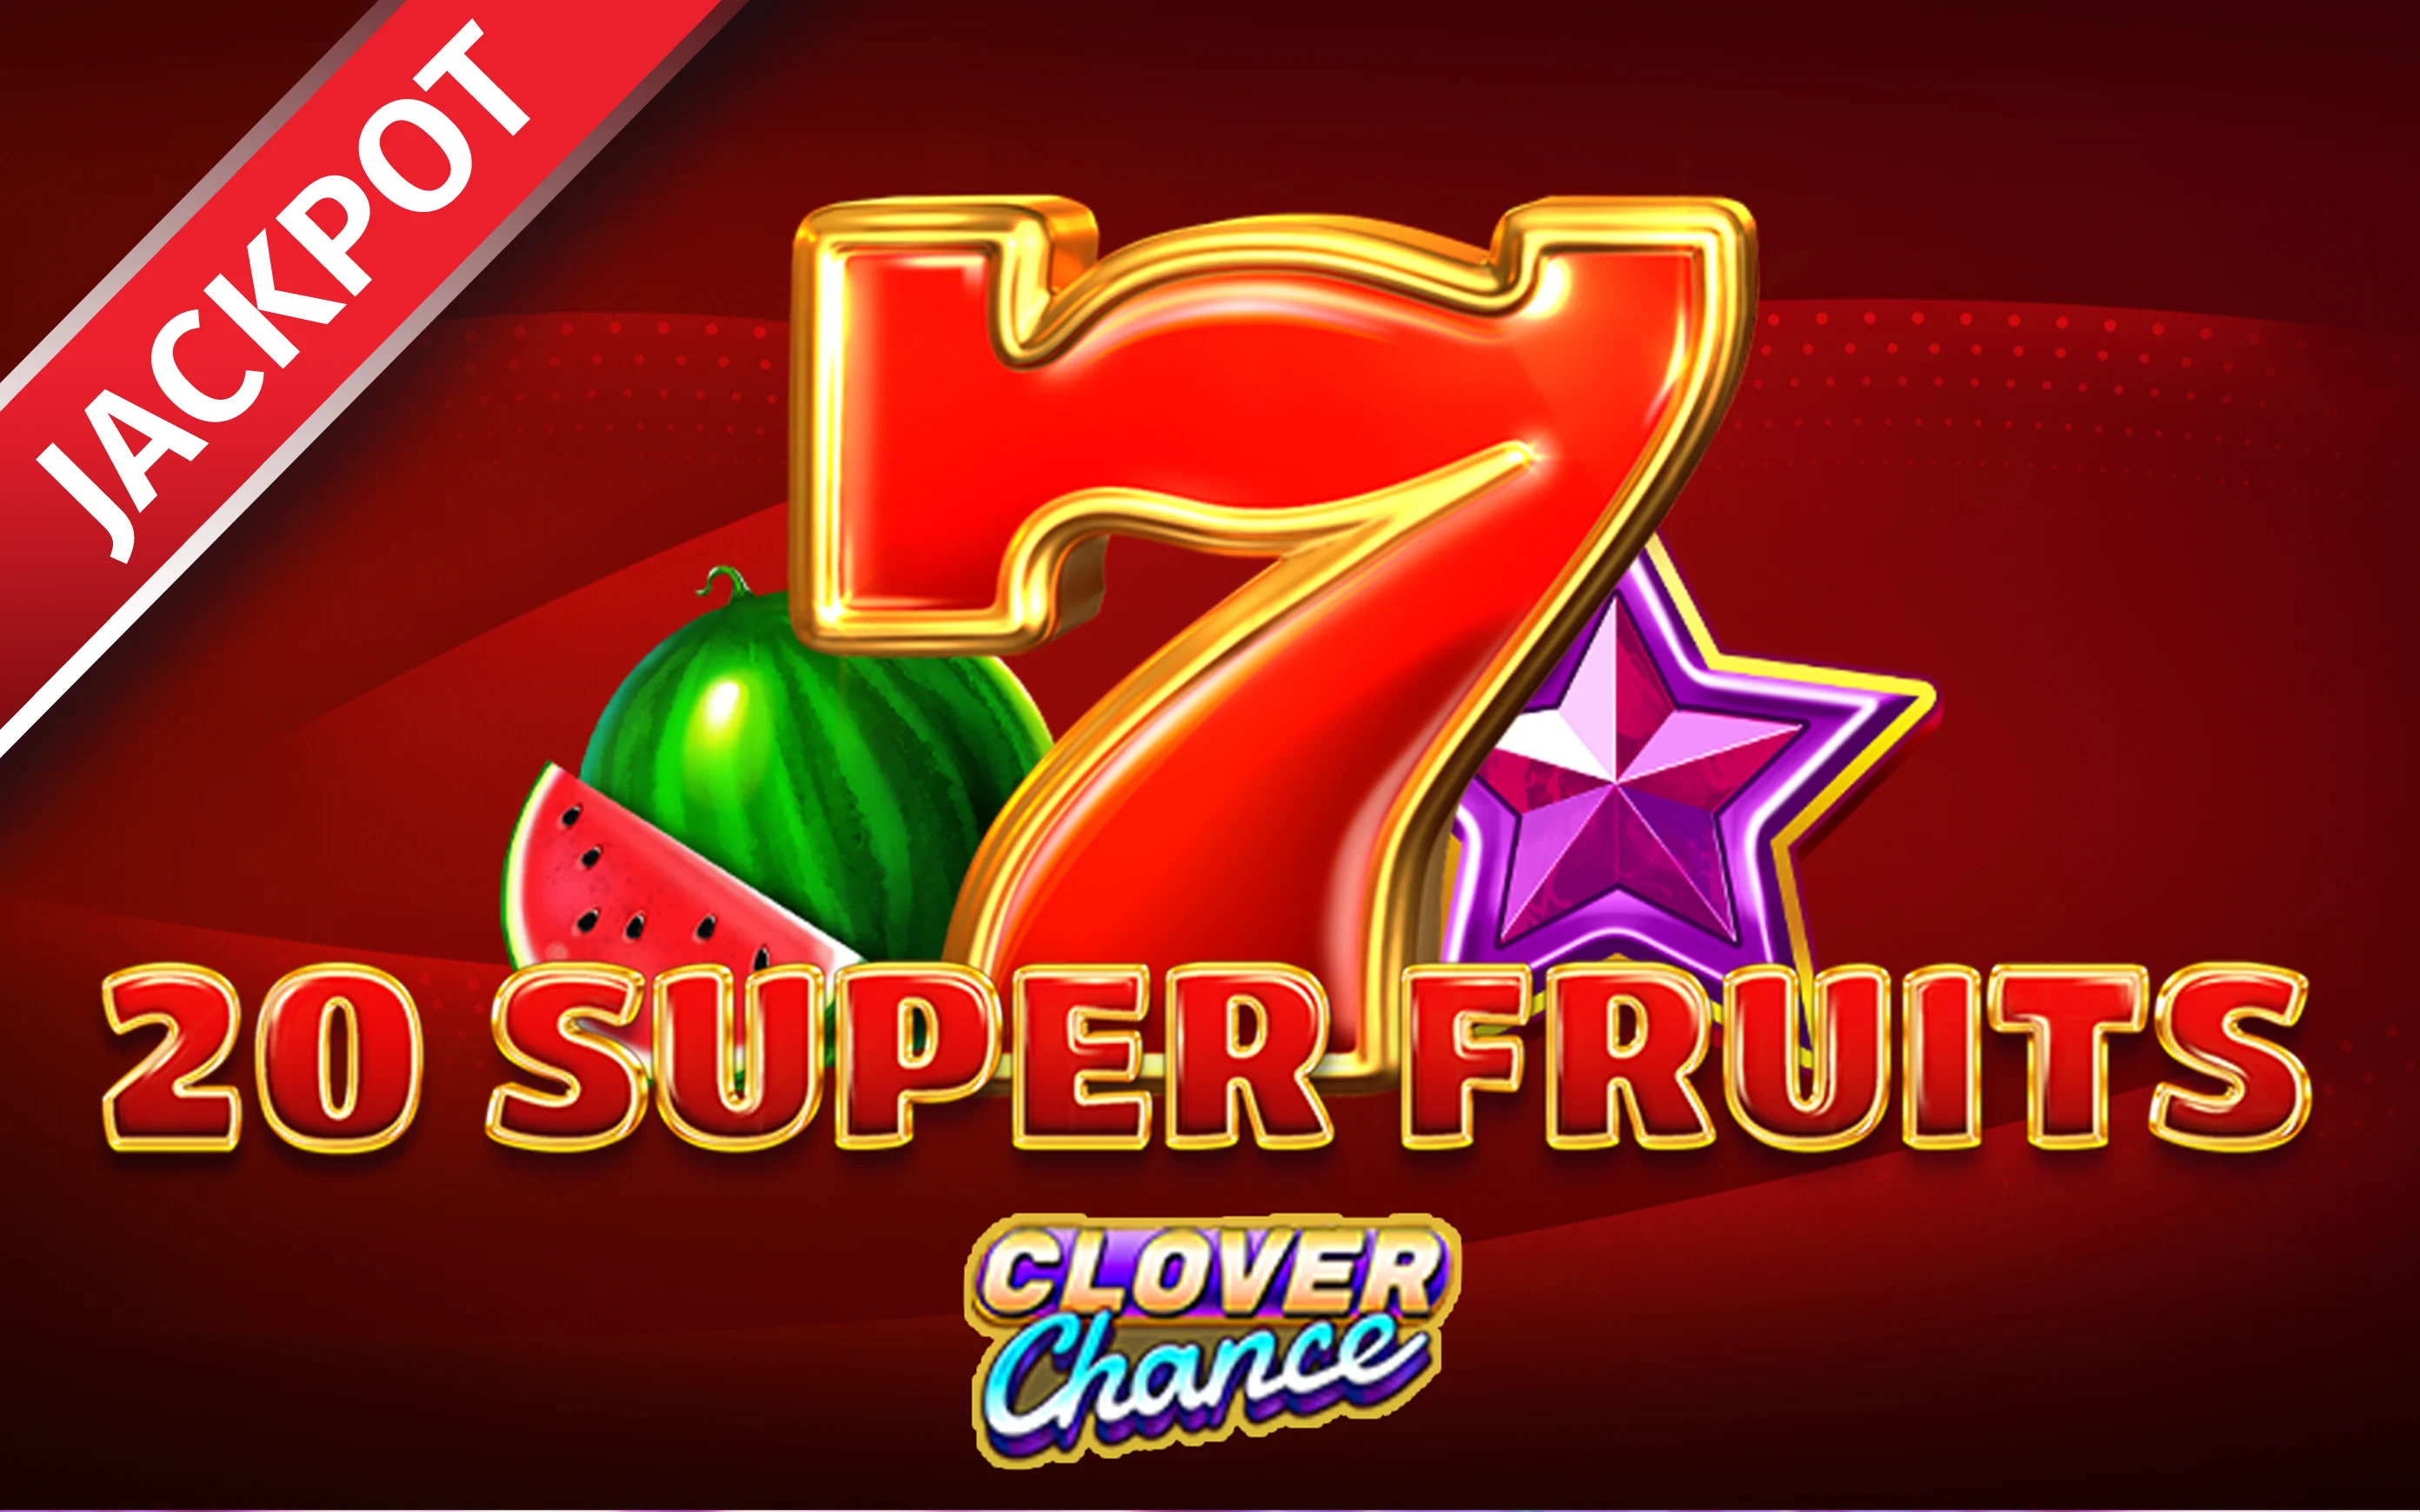 Starcasino.be online casino üzerinden 20 Super Fruits Clover Chance oynayın